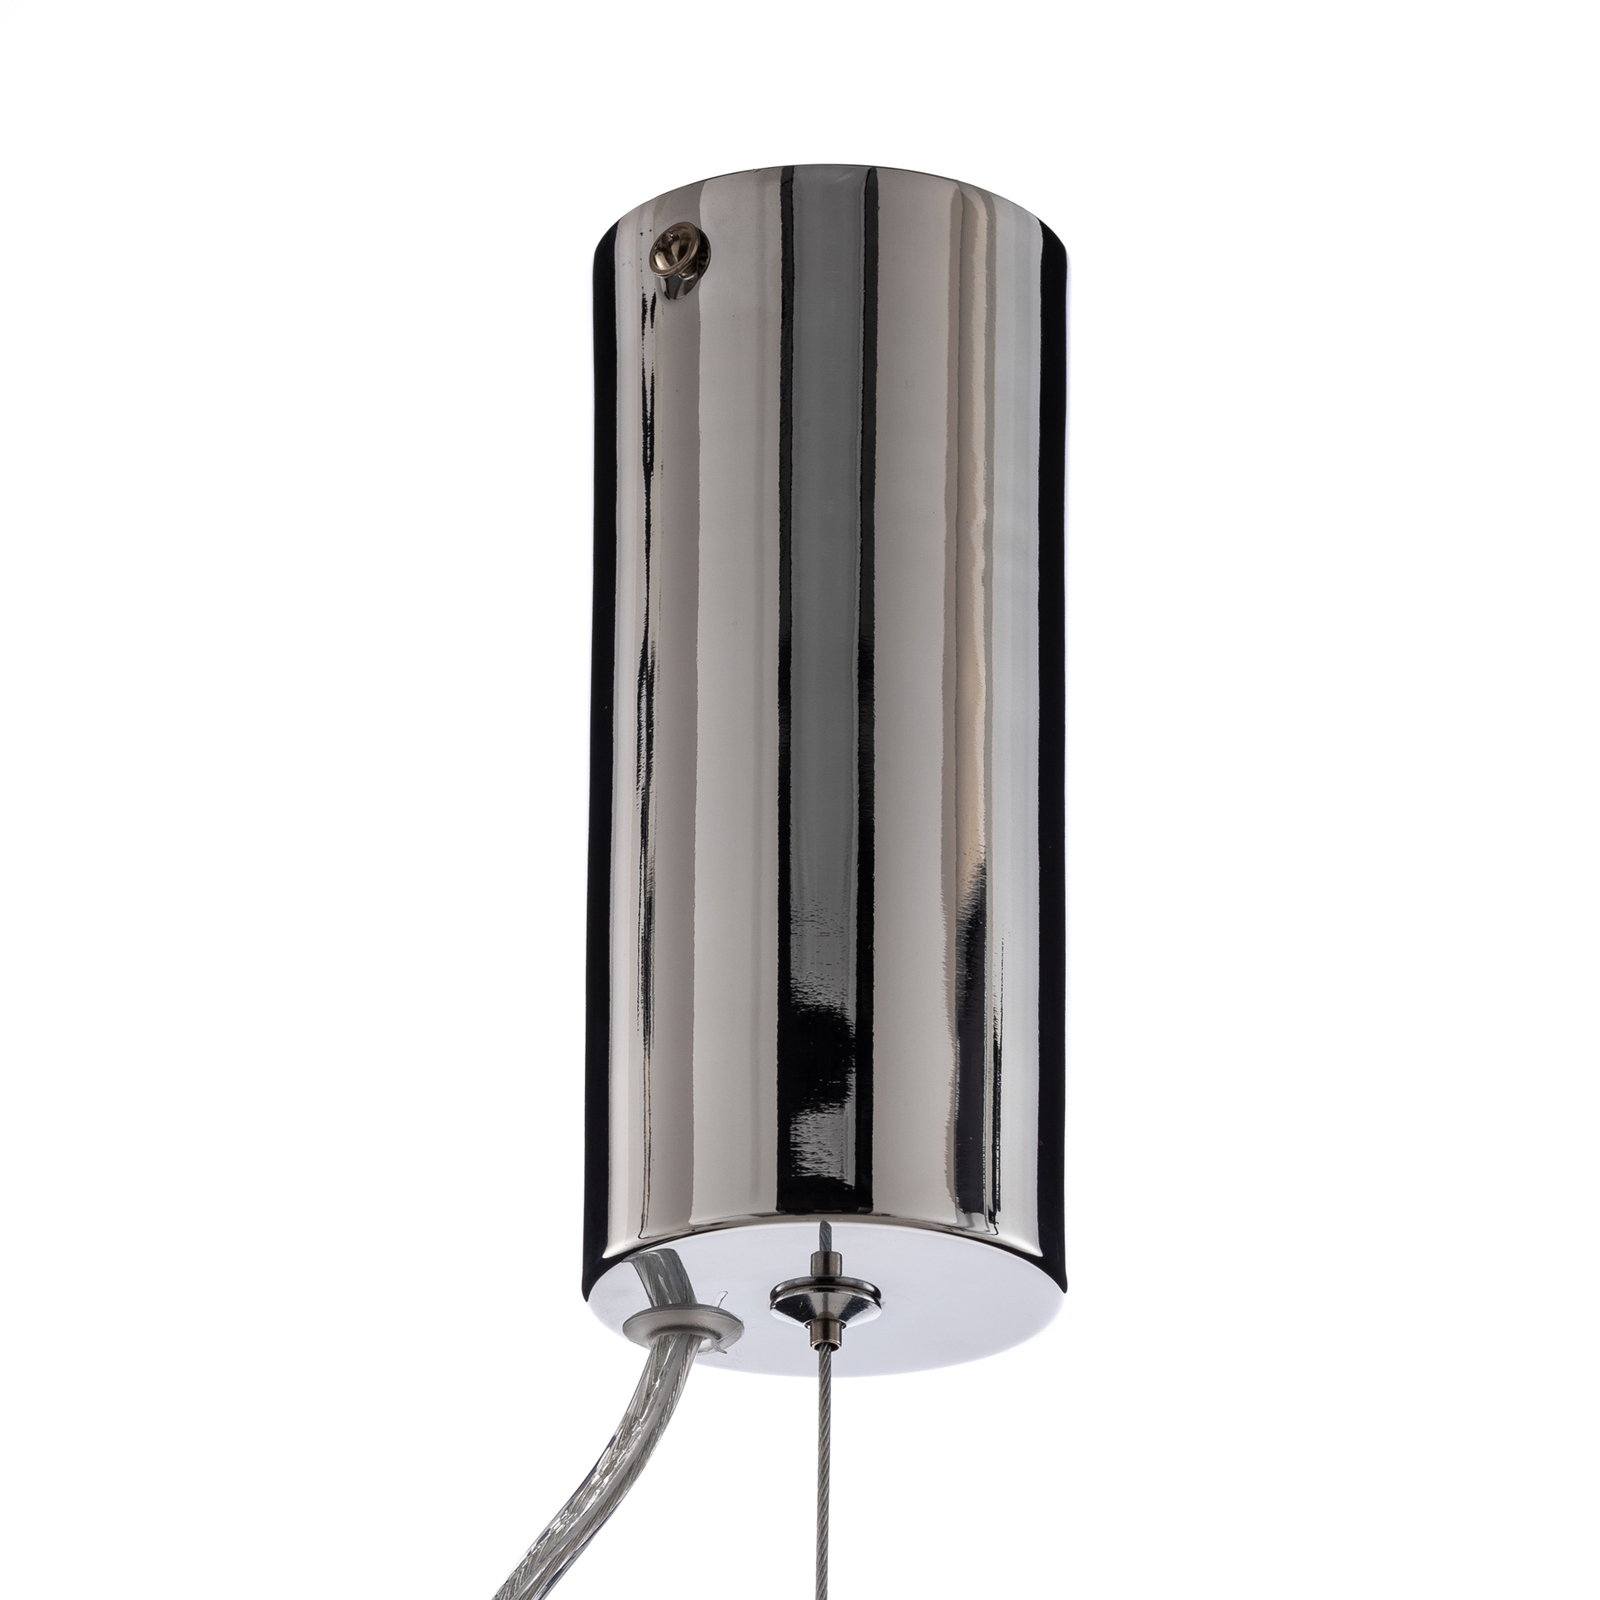 Lucande LED pendant light Fedra, glass, grey/white, Ø 17 cm